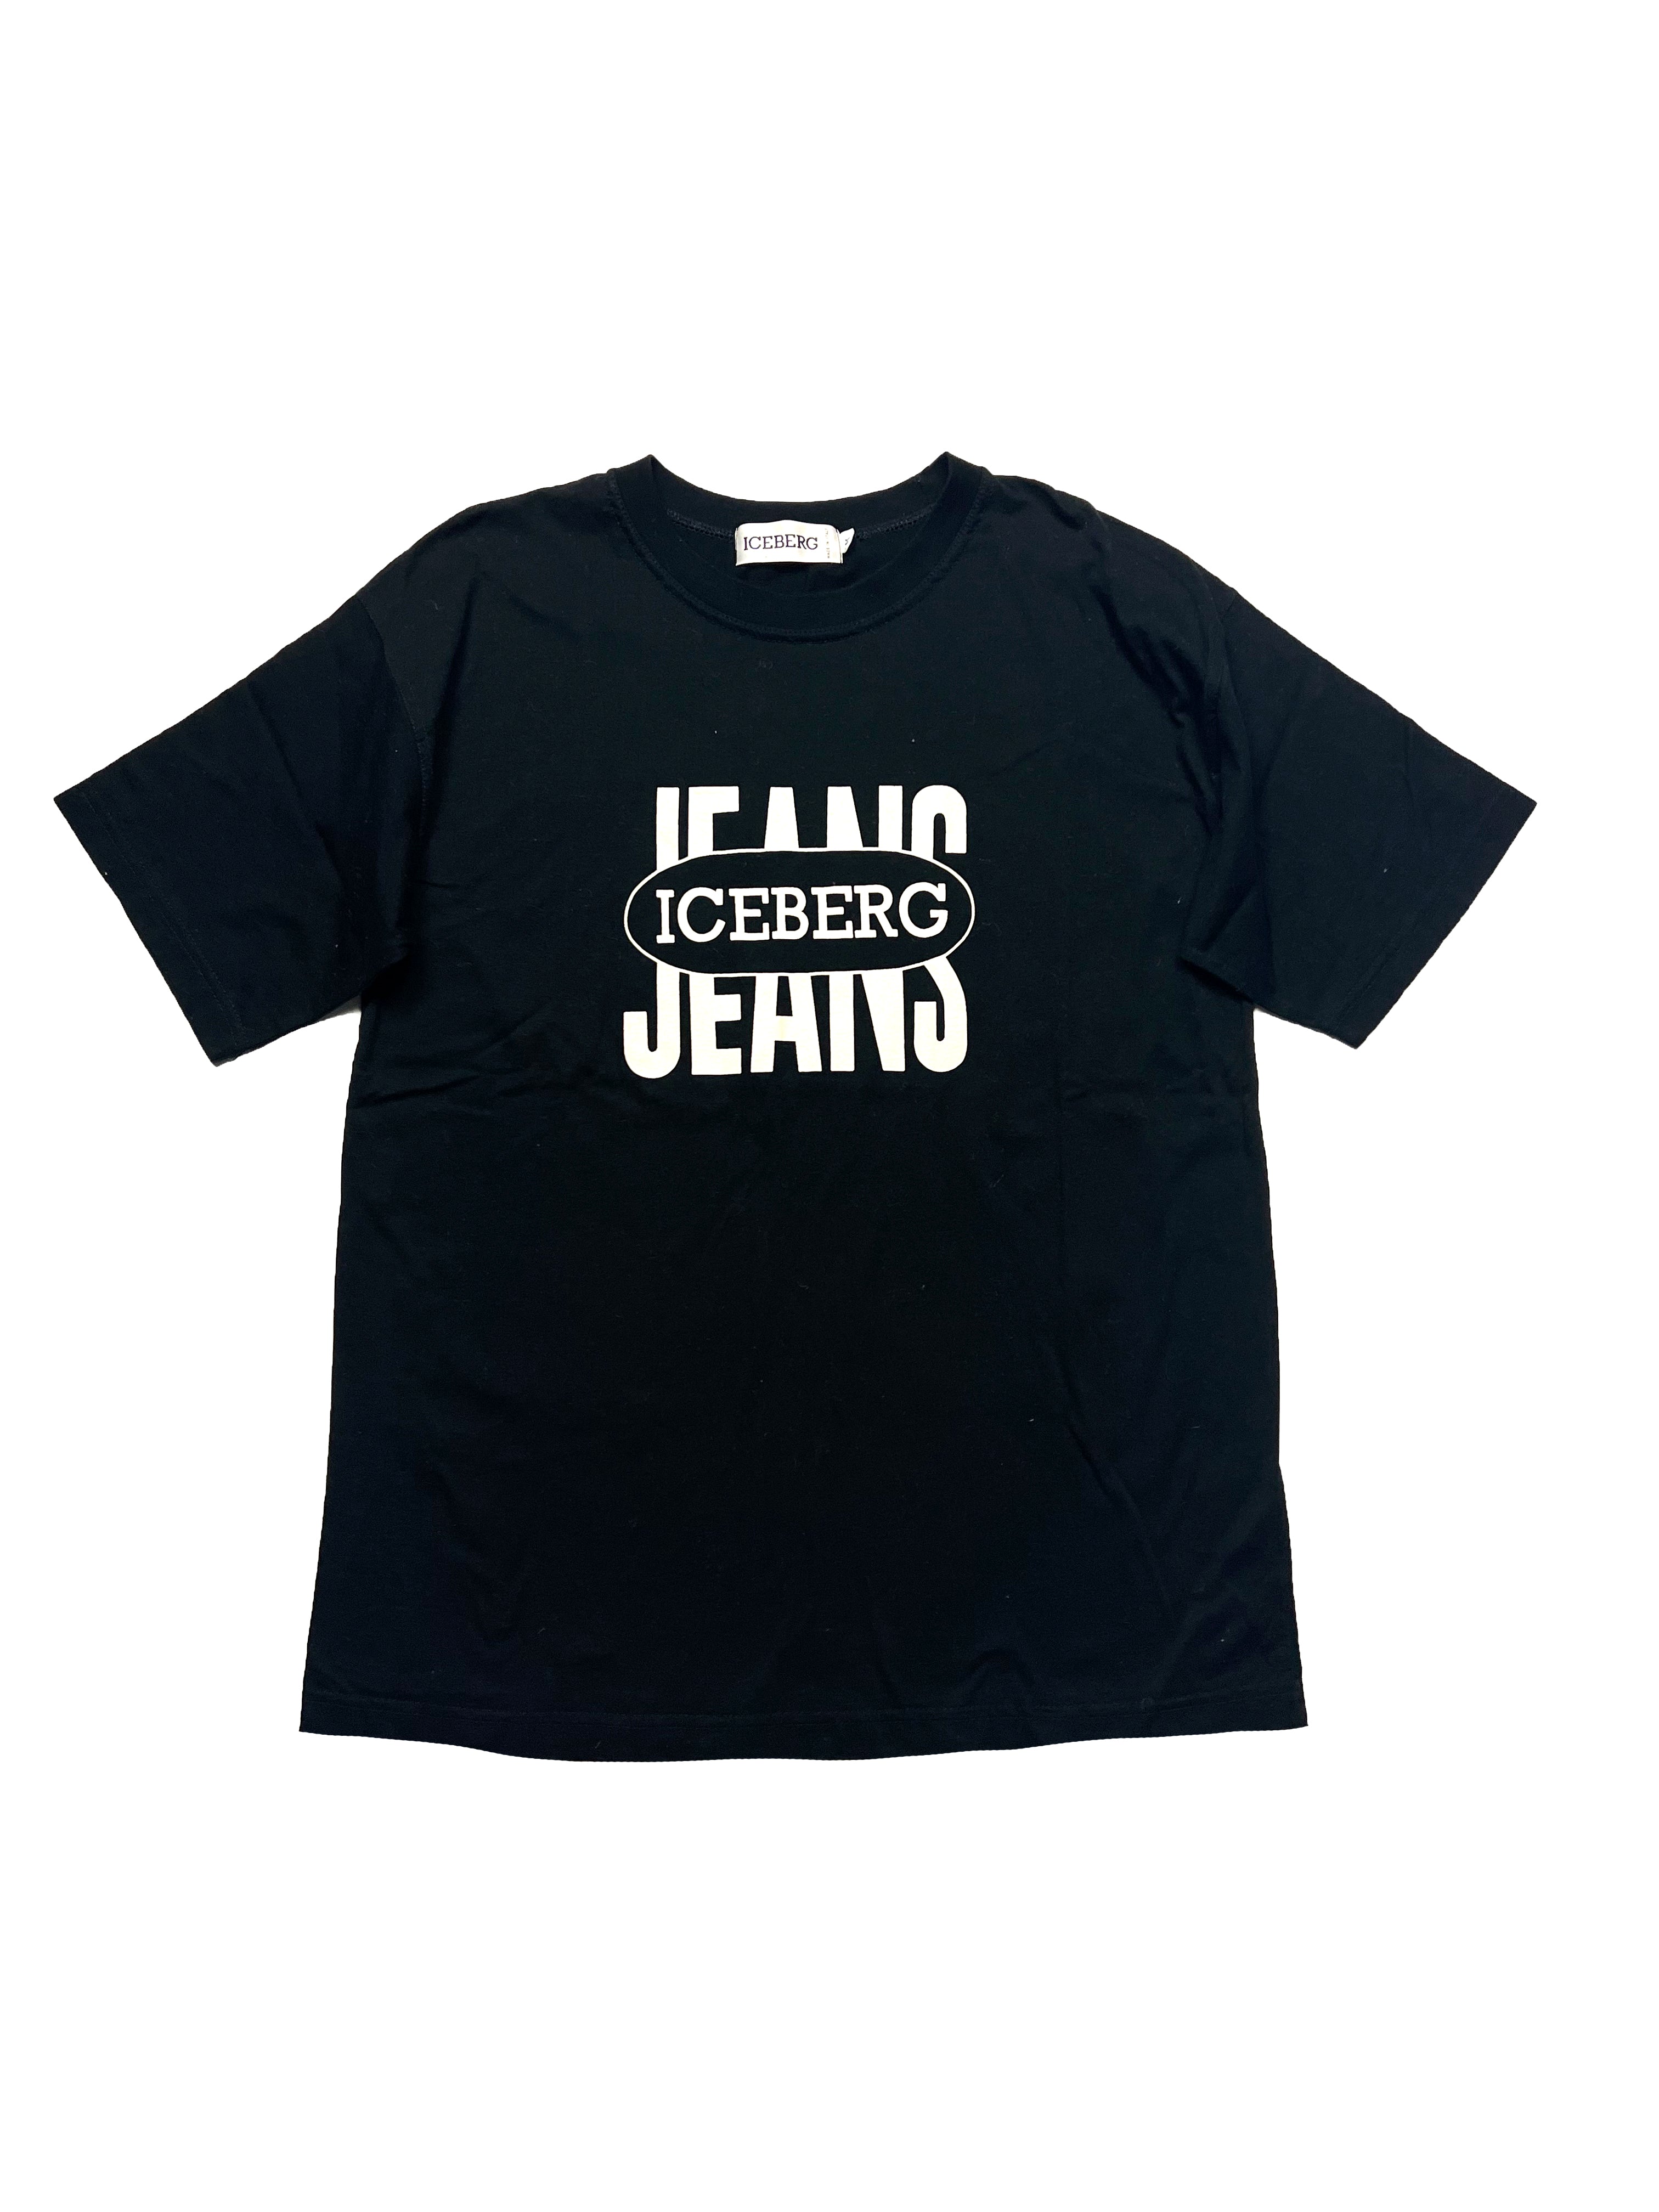 Iceberg Jeans Black T-shirt 90's